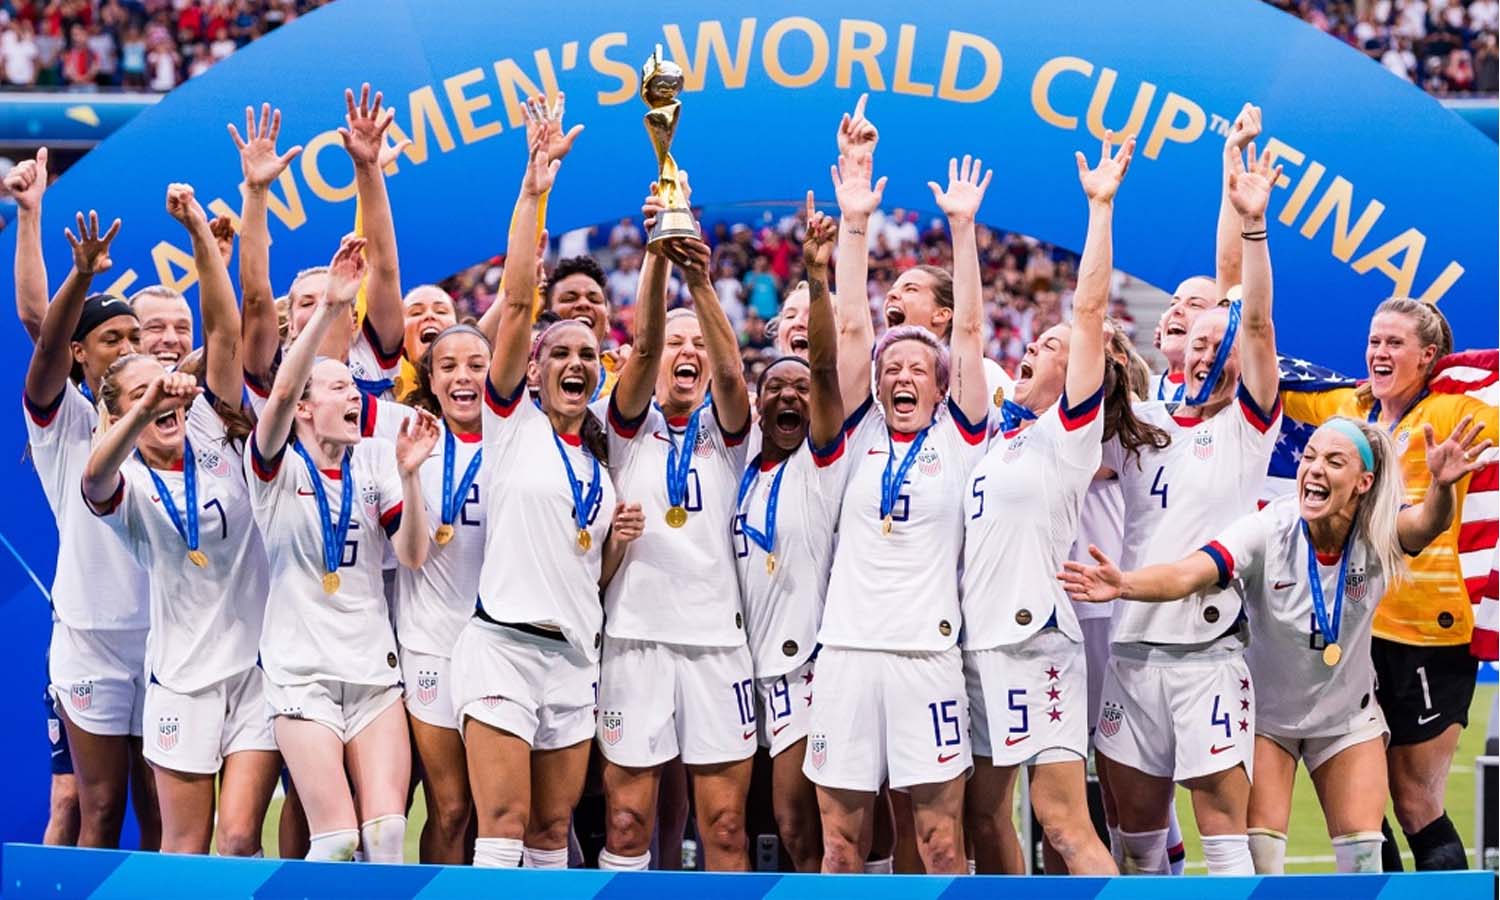 تتويج منتخب الولايات المتحدة الامريكية ببطولة العالم لكرة القدم للسيدات2019 - 8 من اب 2019 (GETTY IMAGES)